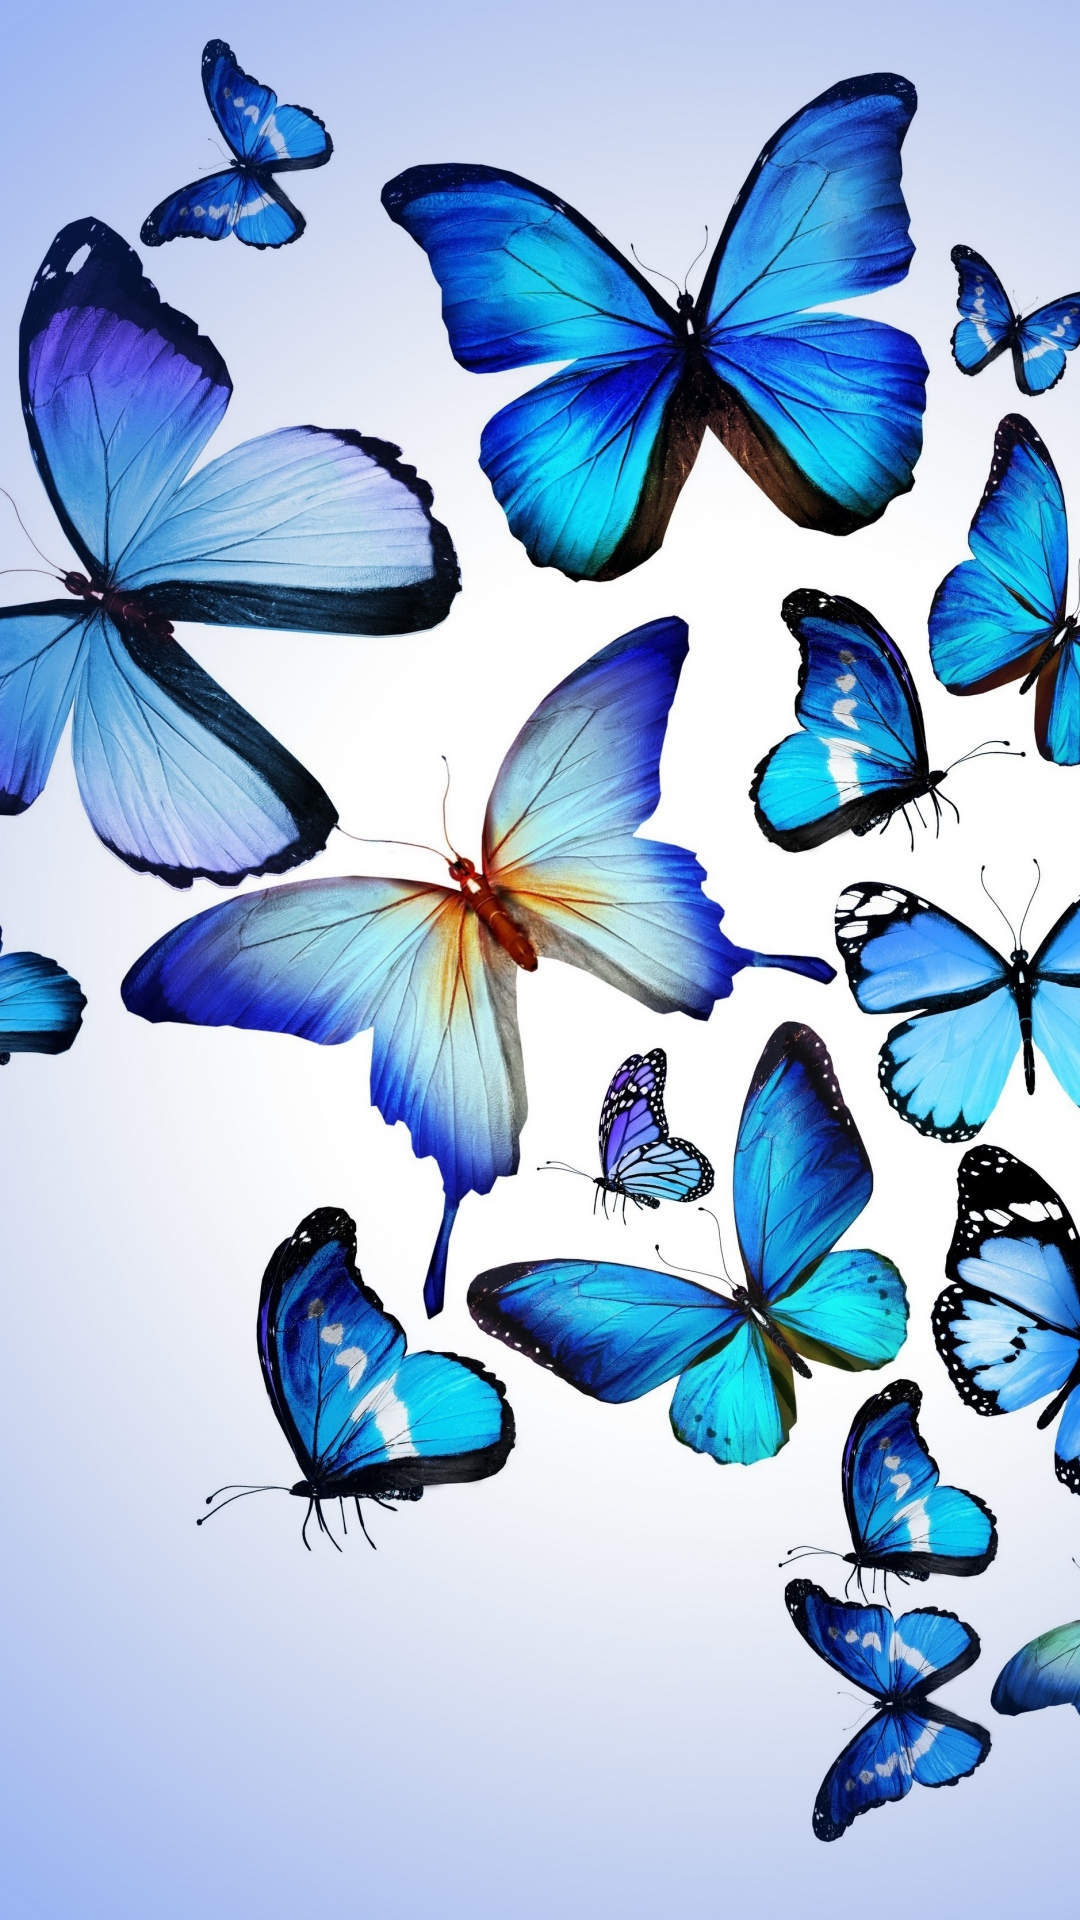 HD Blue Butterflies iPhone Wallpaper resolution 1080x1920